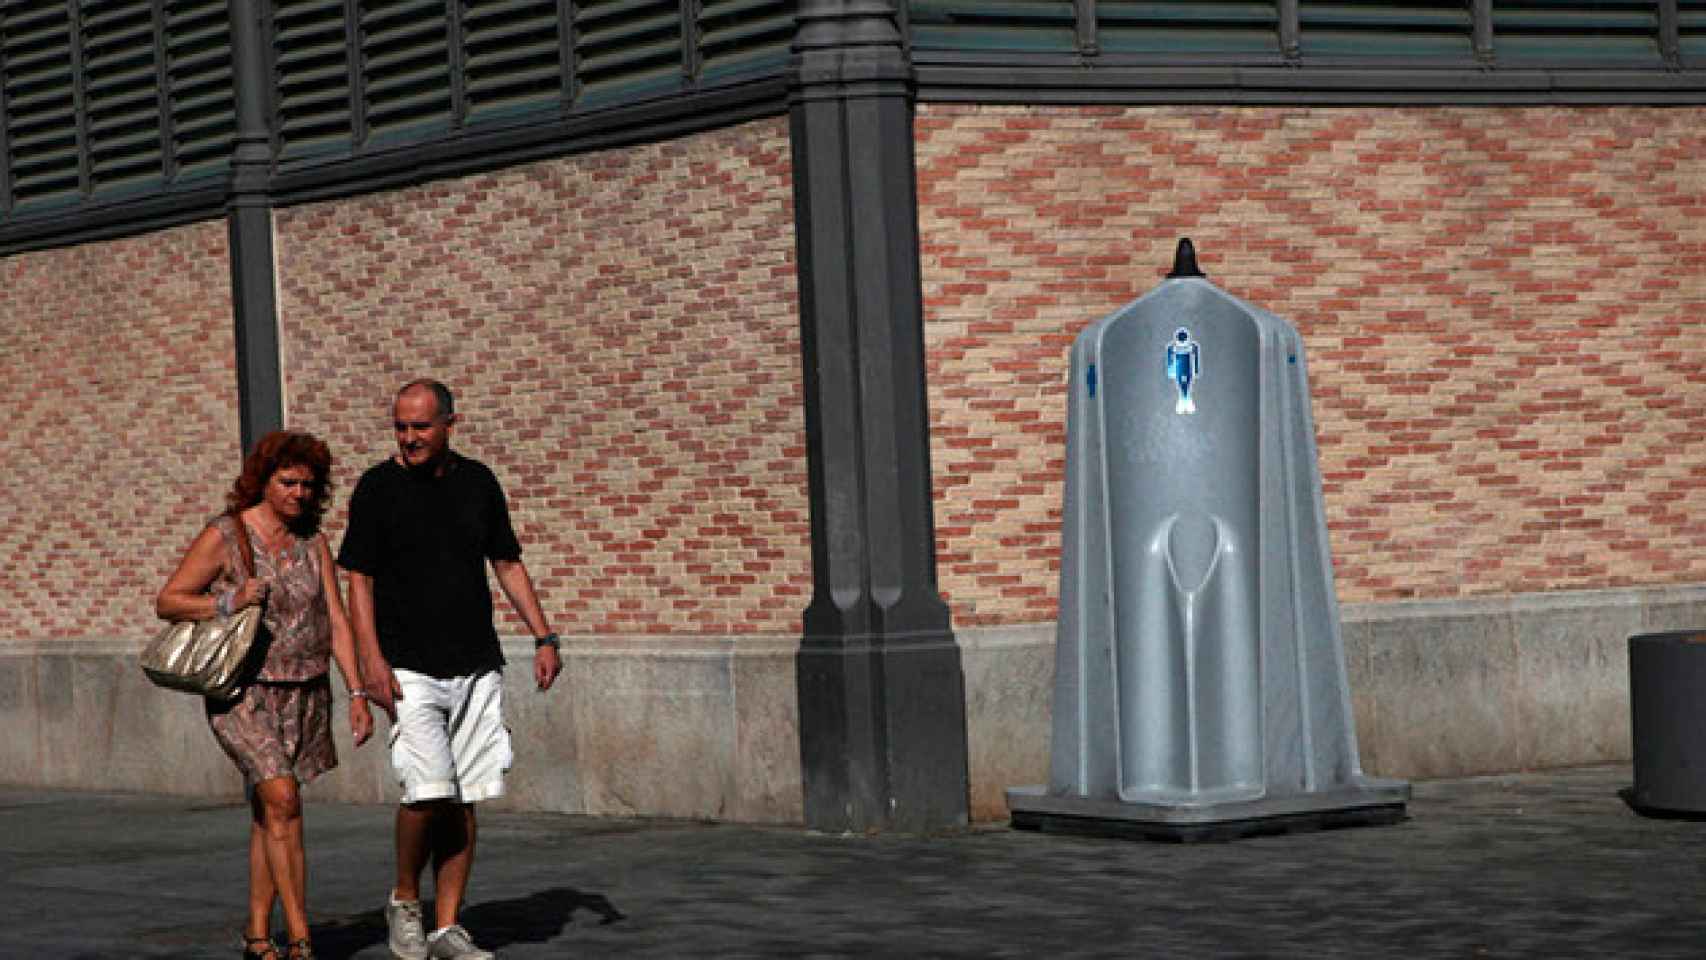 Uno de los urinarios callejeros de última generación de Barcelona.